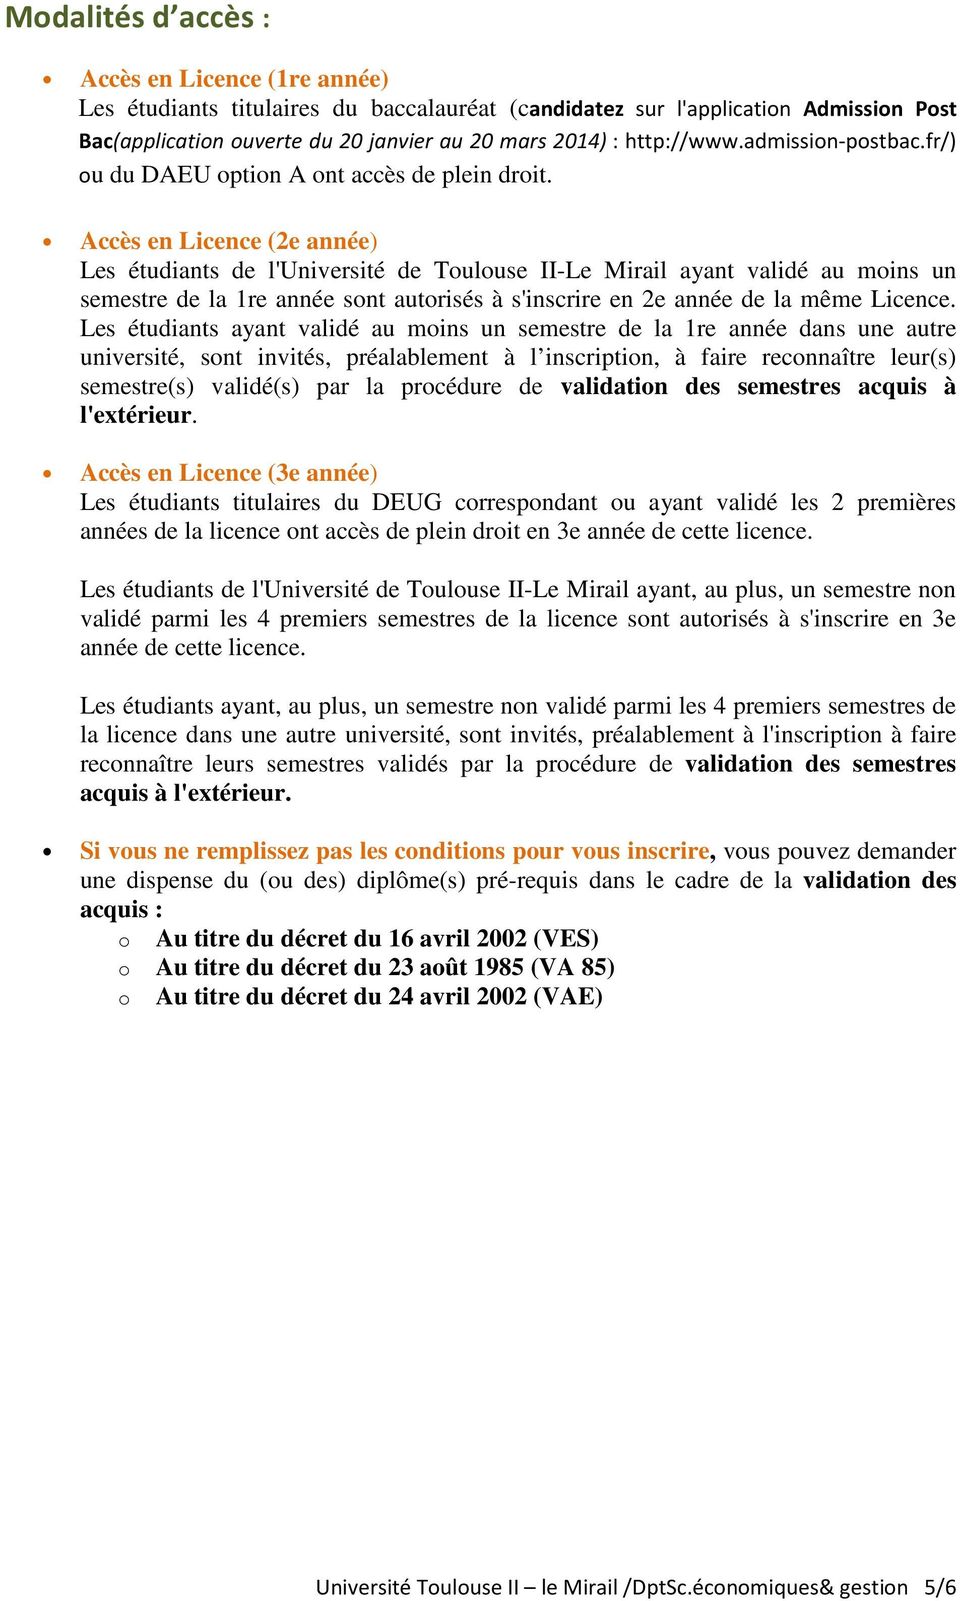 Accès en Licence (2e année) Les étudiants de l'université de Toulouse II-Le Mirail ayant validé au moins un semestre de la 1re année sont autorisés à s'inscrire en 2e année de la même Licence.